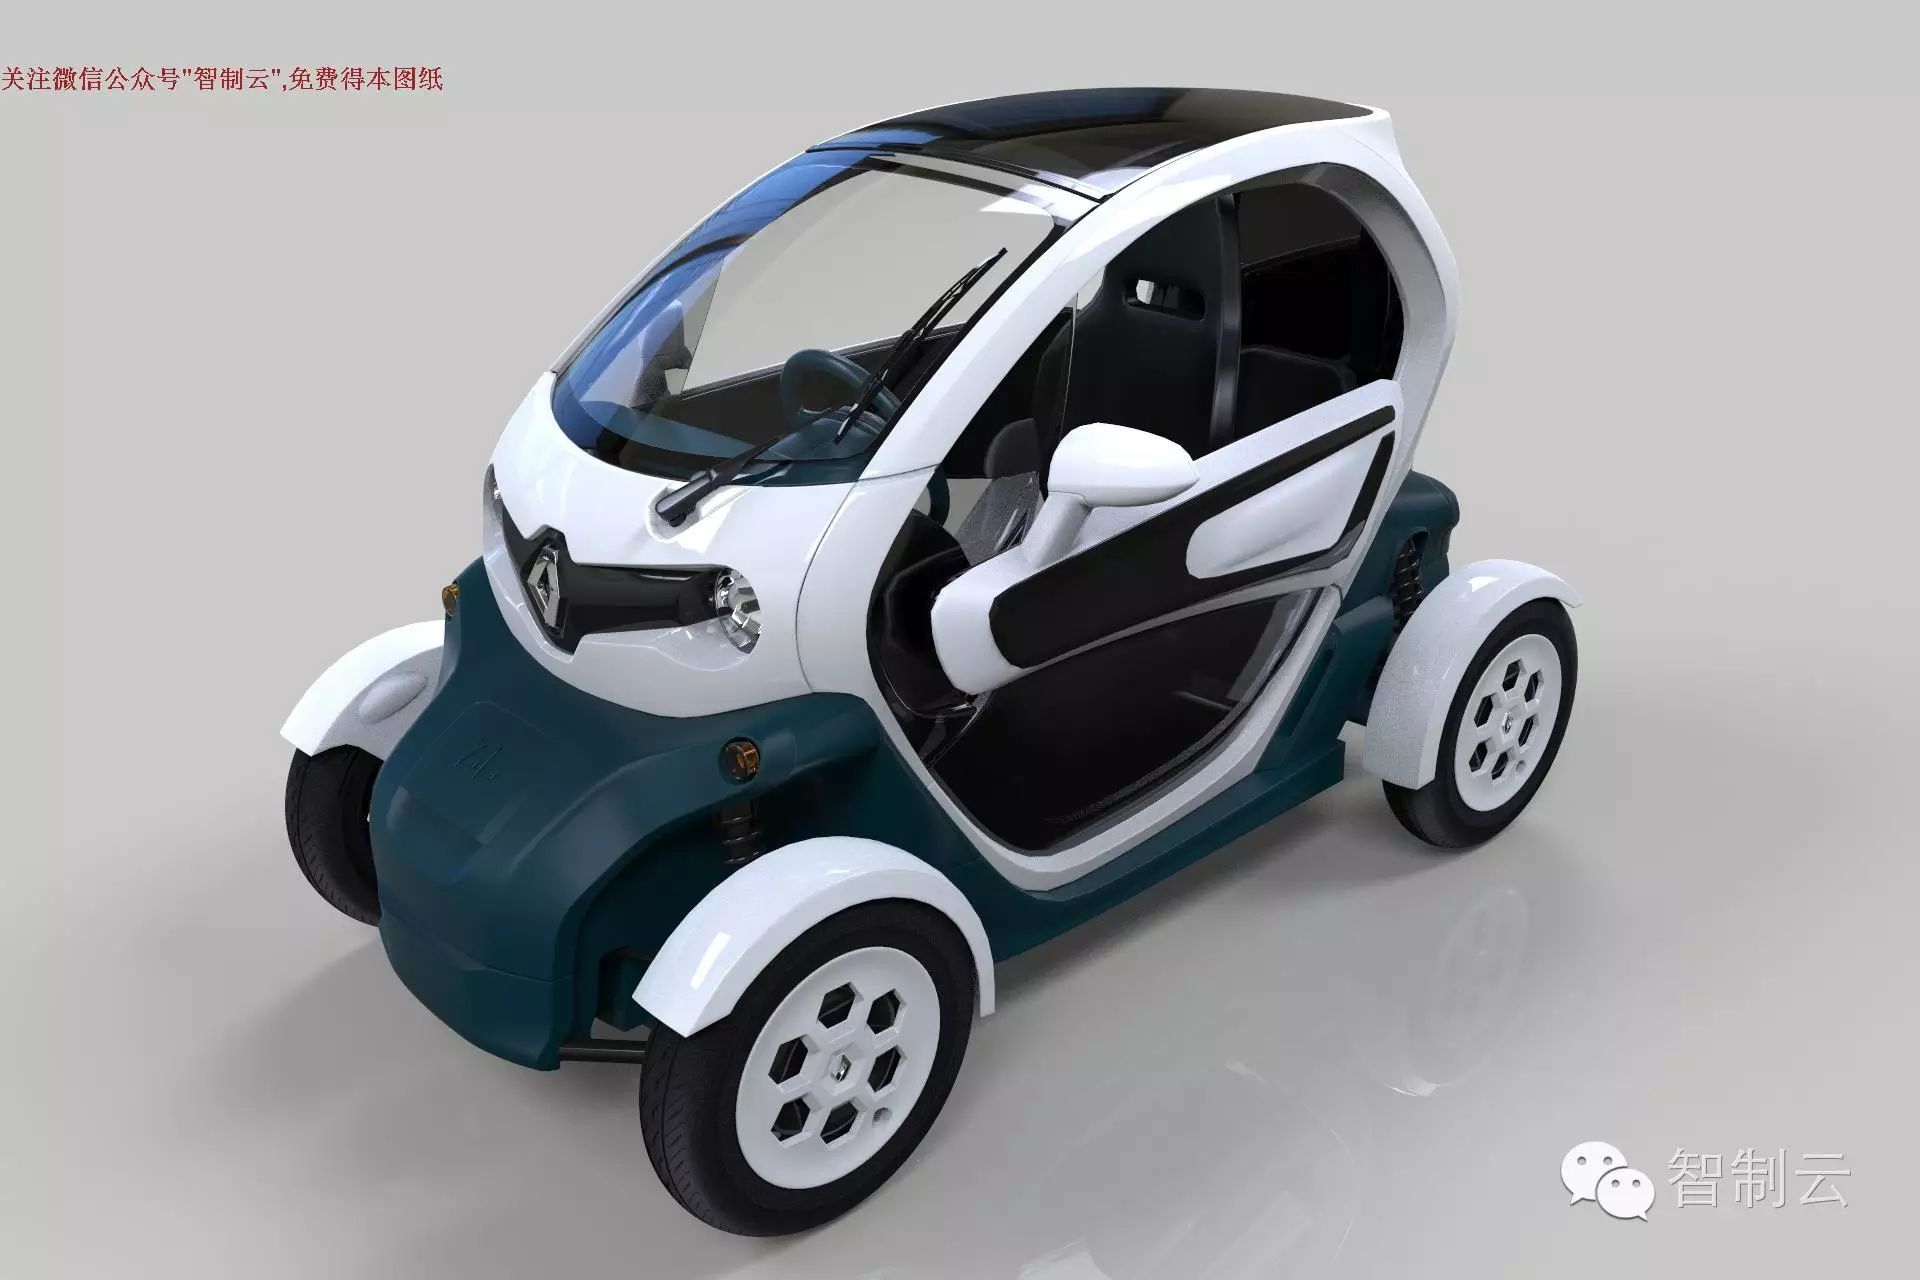 【汽车轿车】雷诺Renault Twizy小型电动车造型三维建模图纸 RHINO设计